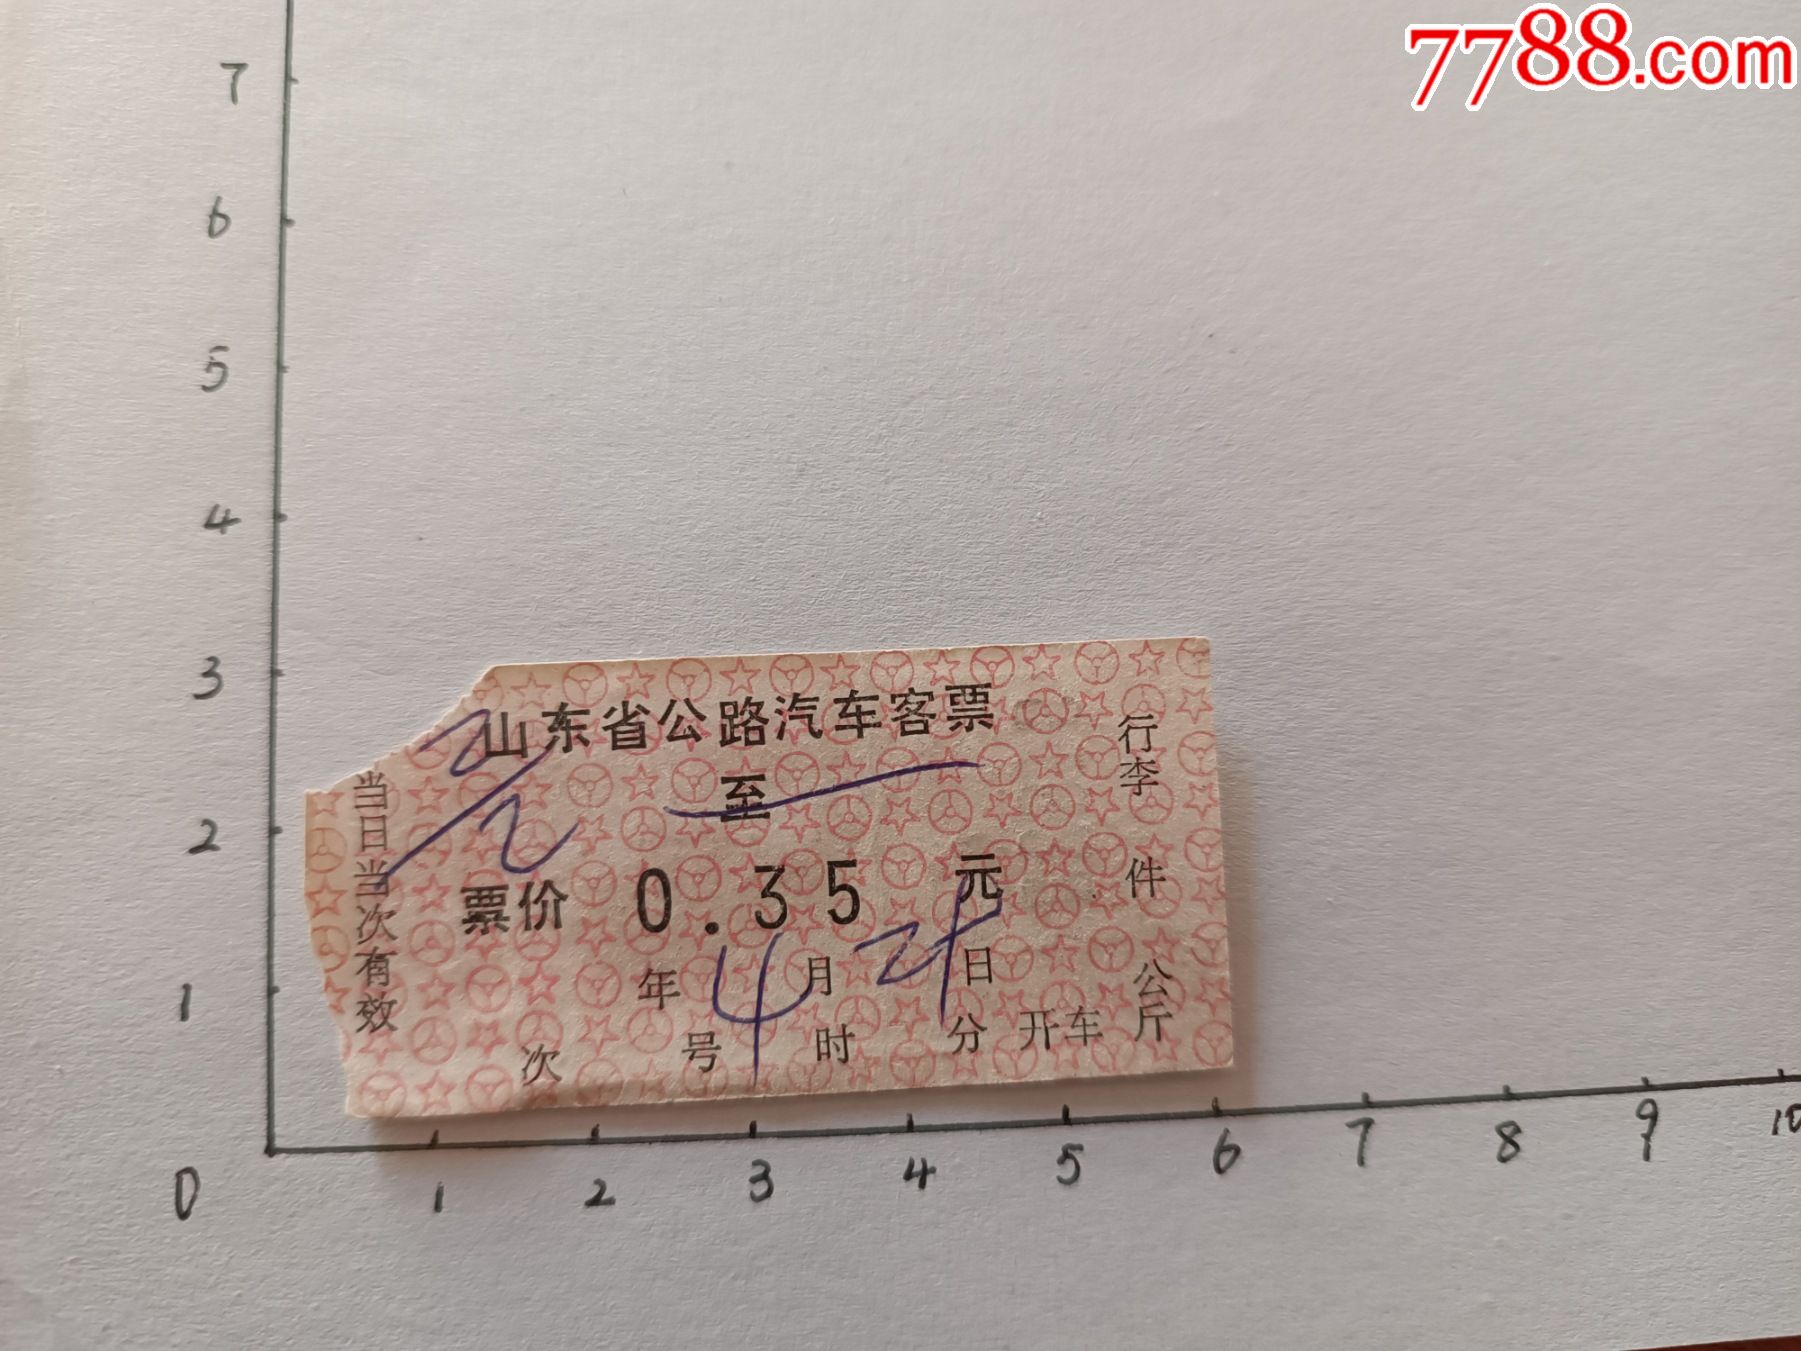 广东省公路汽车客票6种(1)_汽车票_图片欣赏_收藏价格_7788烟标收藏